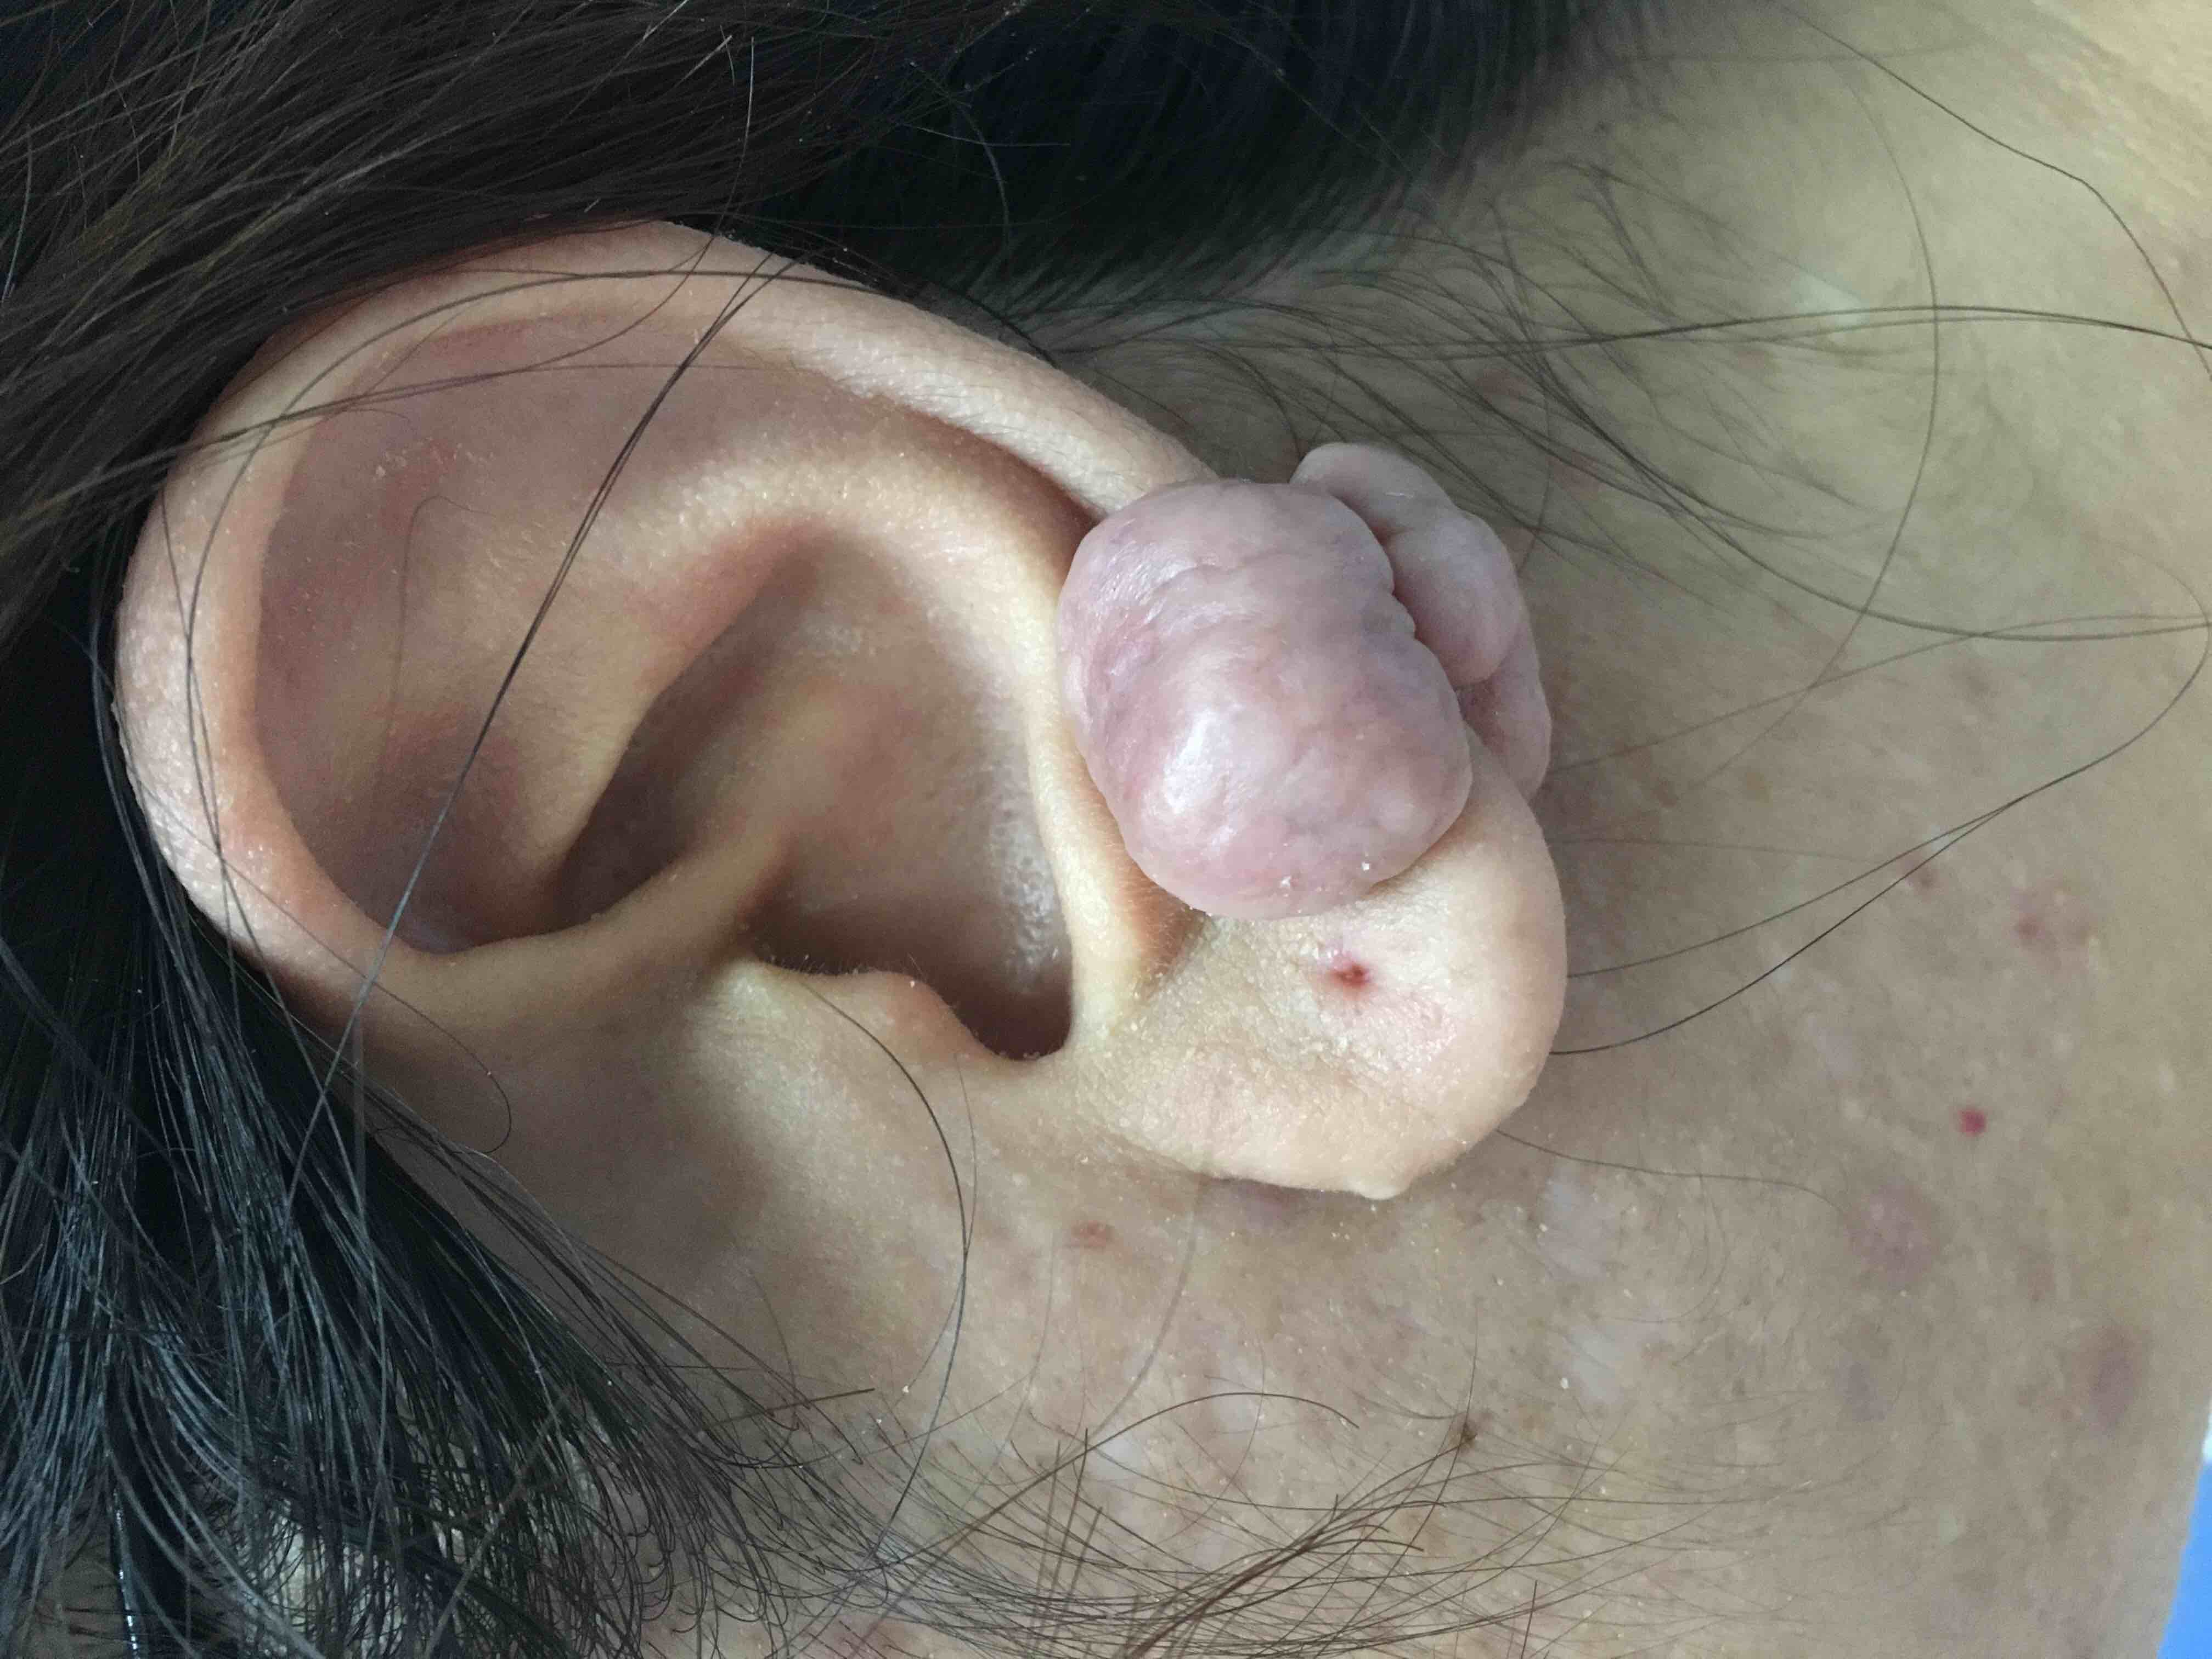 耳朵瘢痕疙瘩照片图片